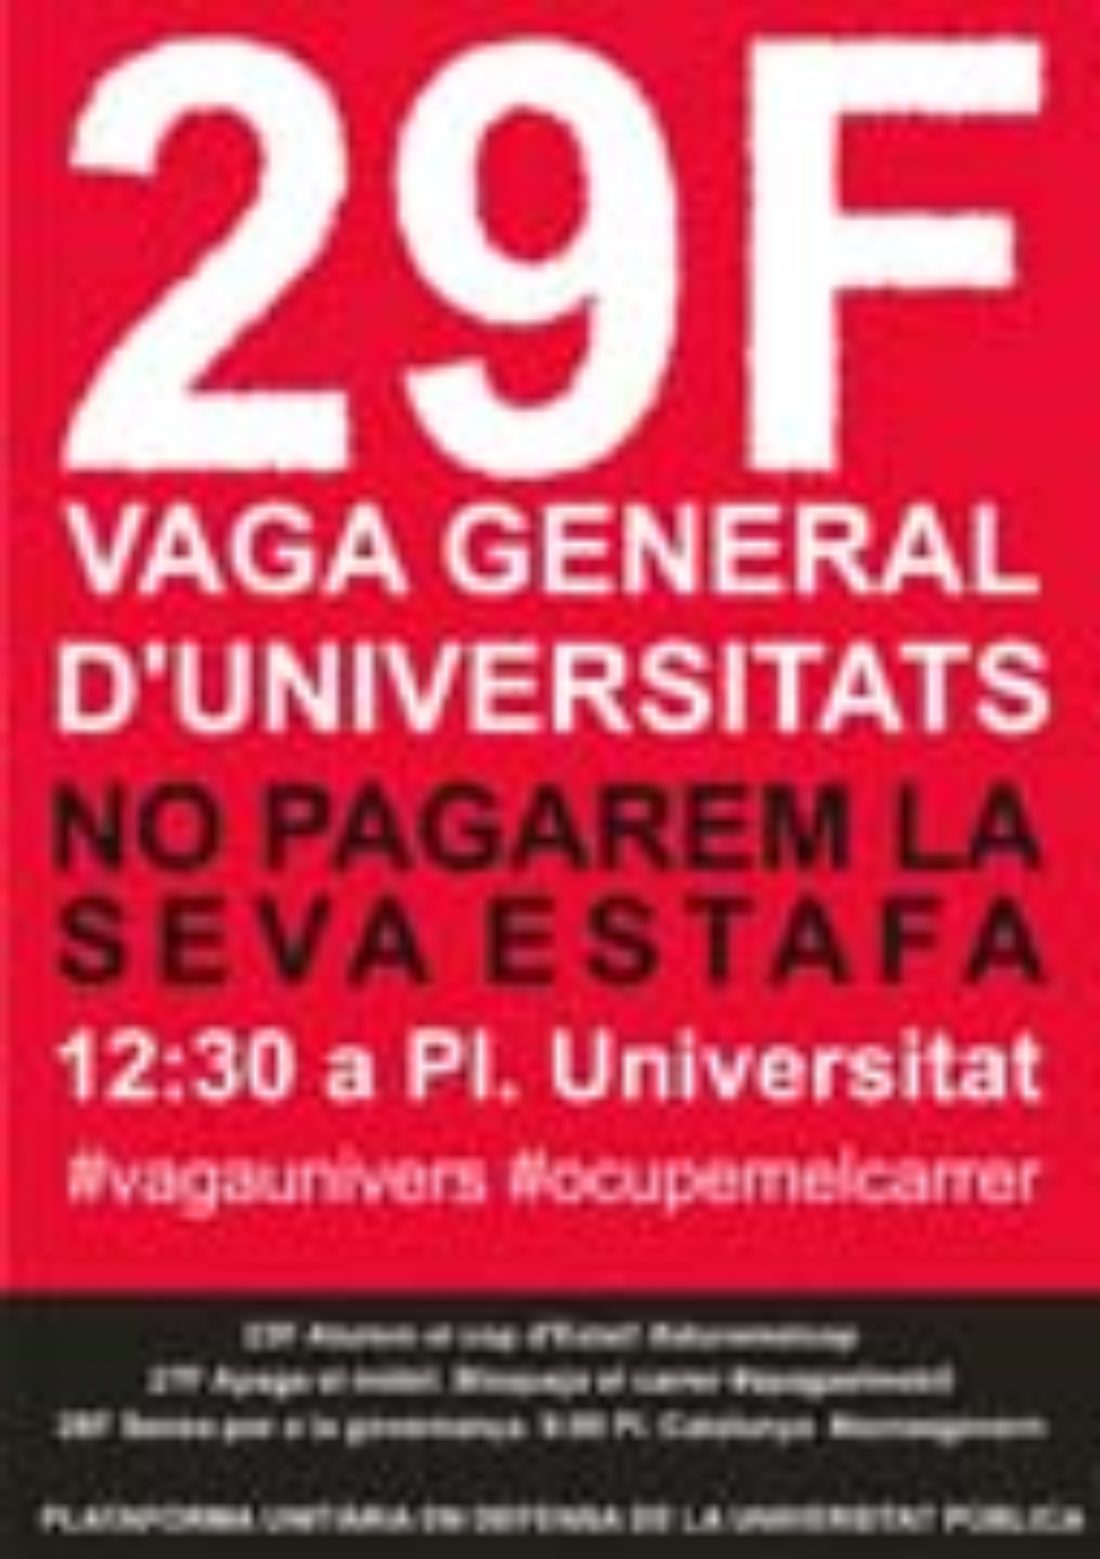 29 F, Barcelona: Huelga general universitaria y manifestación (y continuará)